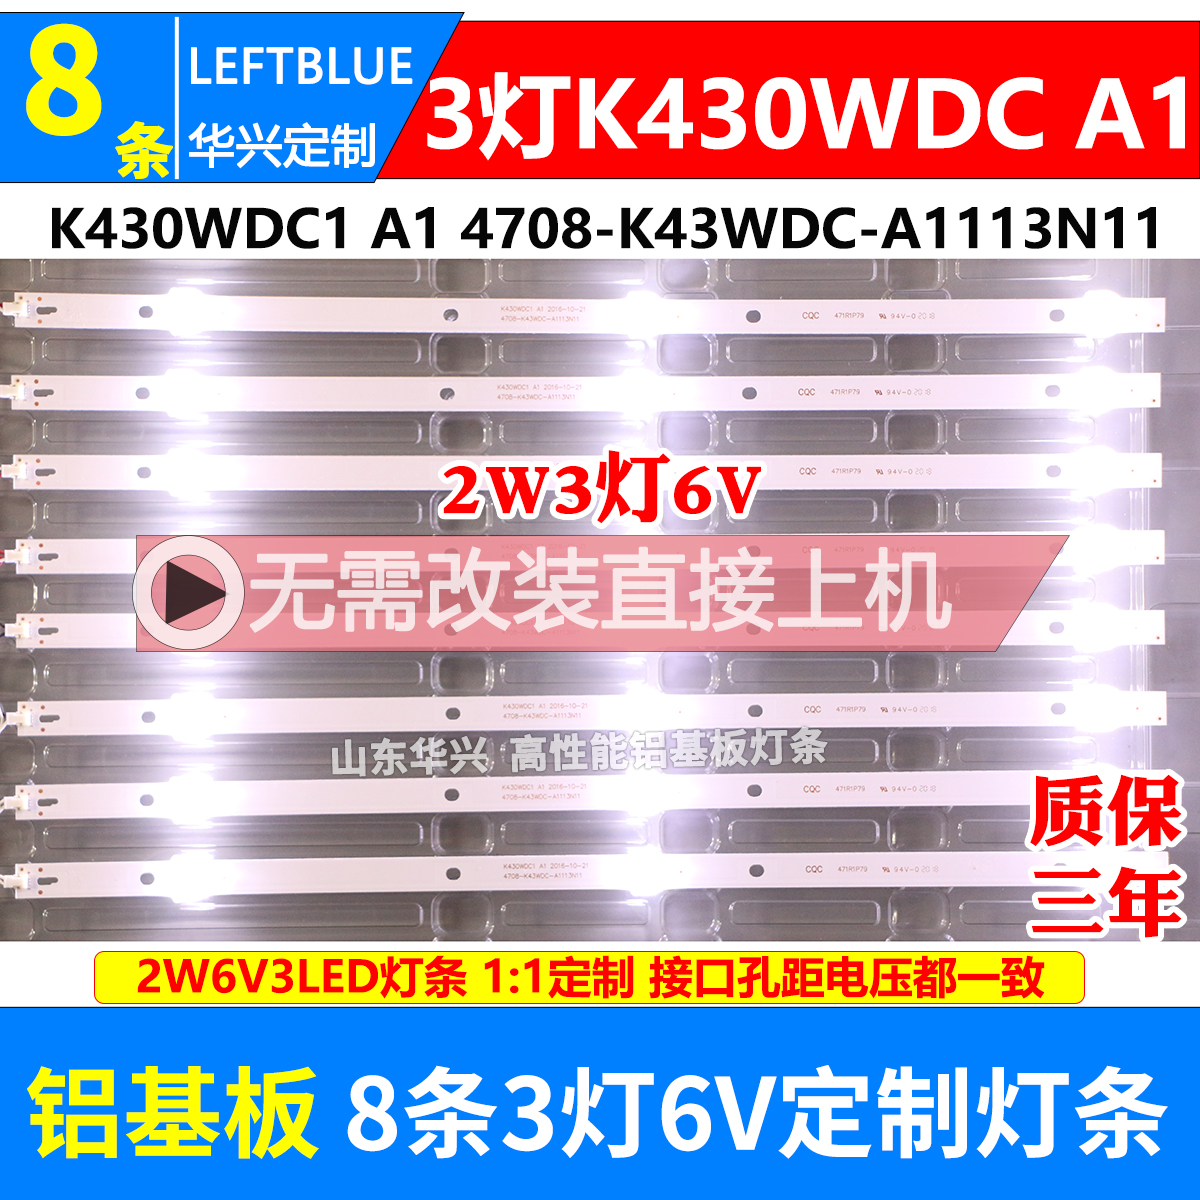 鲁至适用松下TH-43E400C灯条 K430WDC1 4708-K43WDC-A1113N11背光 电子元器件市场 显示屏/LCD液晶屏/LED屏/TFT屏 原图主图